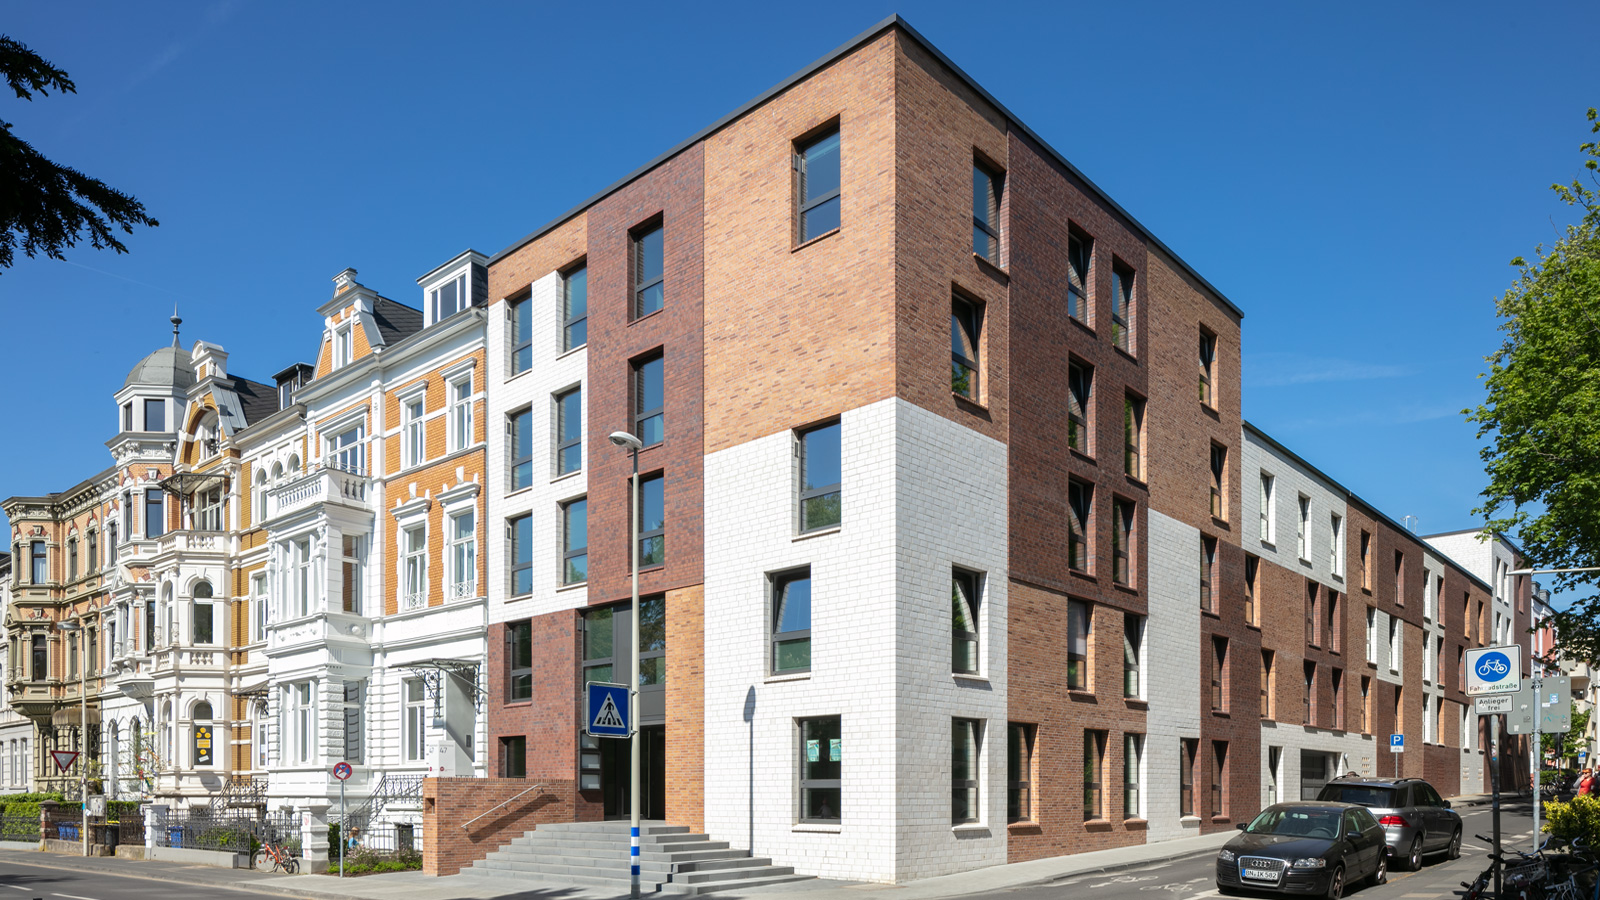 Architekt Bonn Studierendenwohnheim Kaiserstraße - 70 Apartments für Studierende in der Bonner Südstadt fertiggestellt. Koenigs Rütter Architekten Bonn.